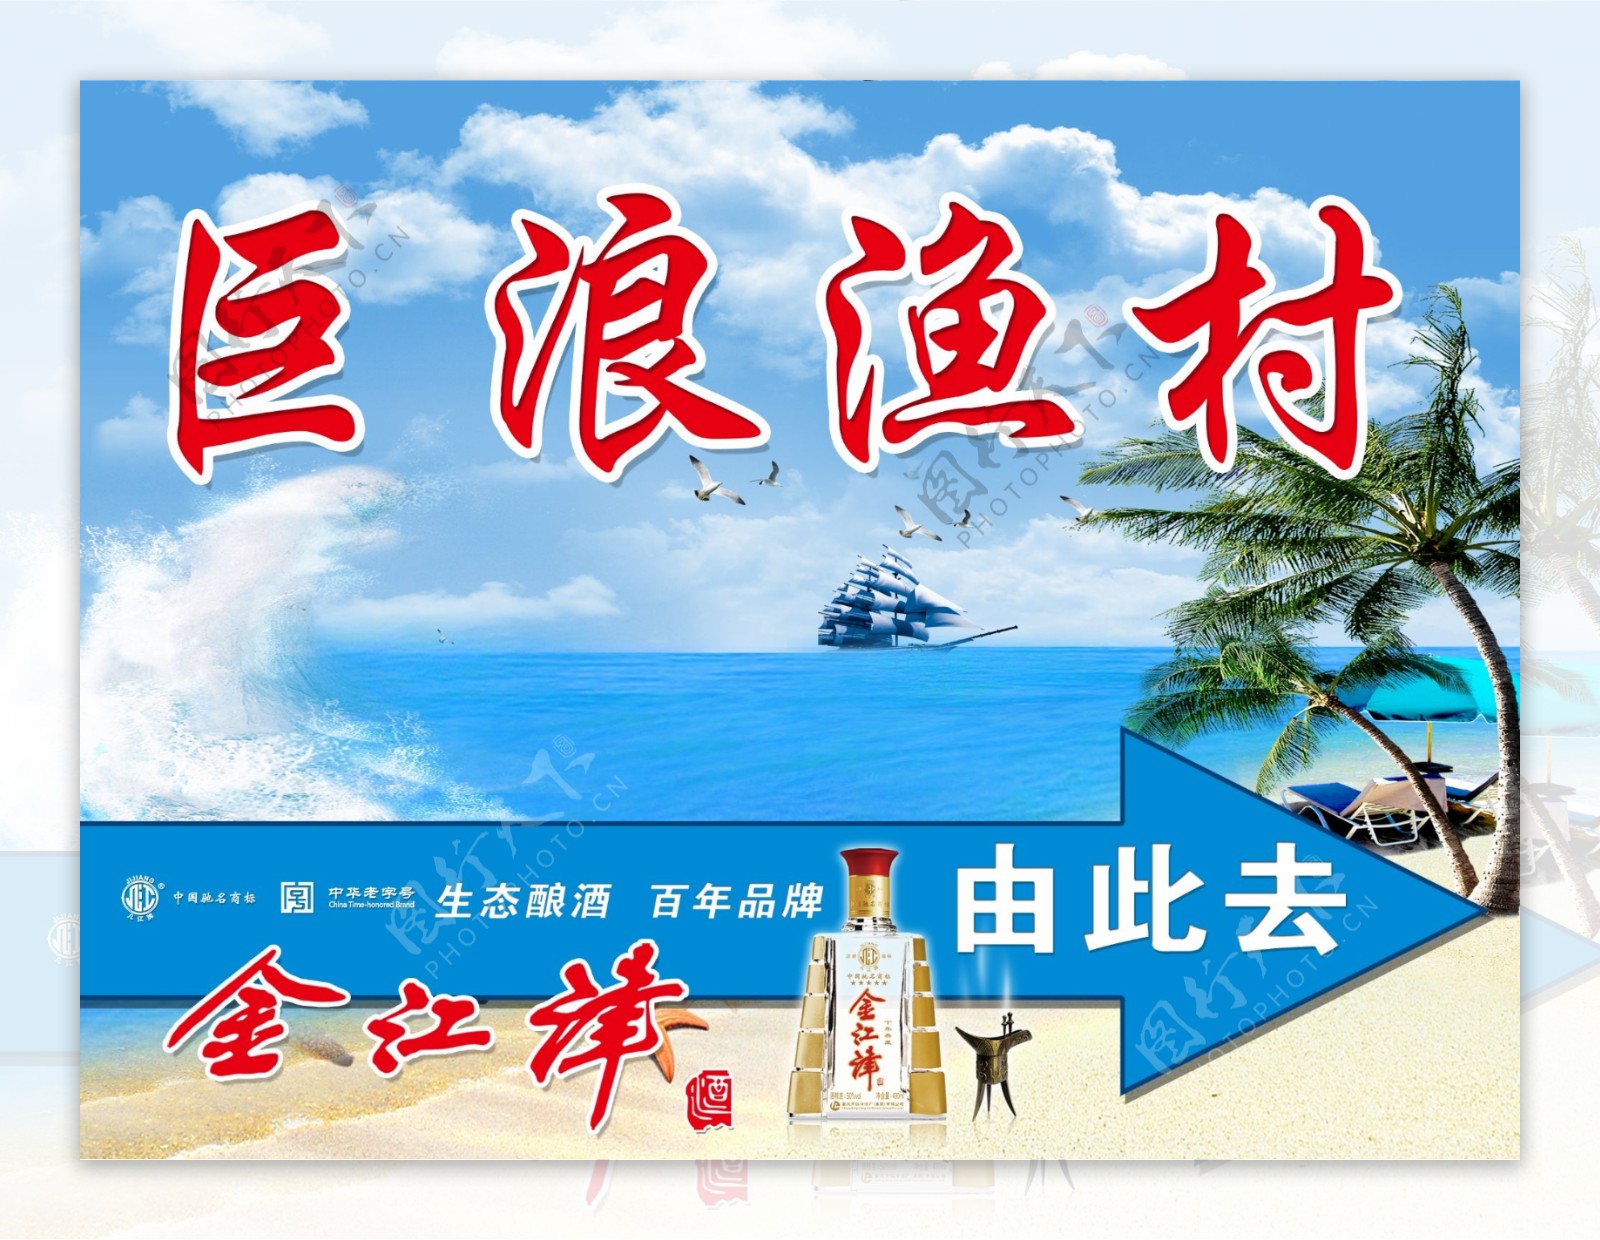 巨浪渔村宣传广告图片